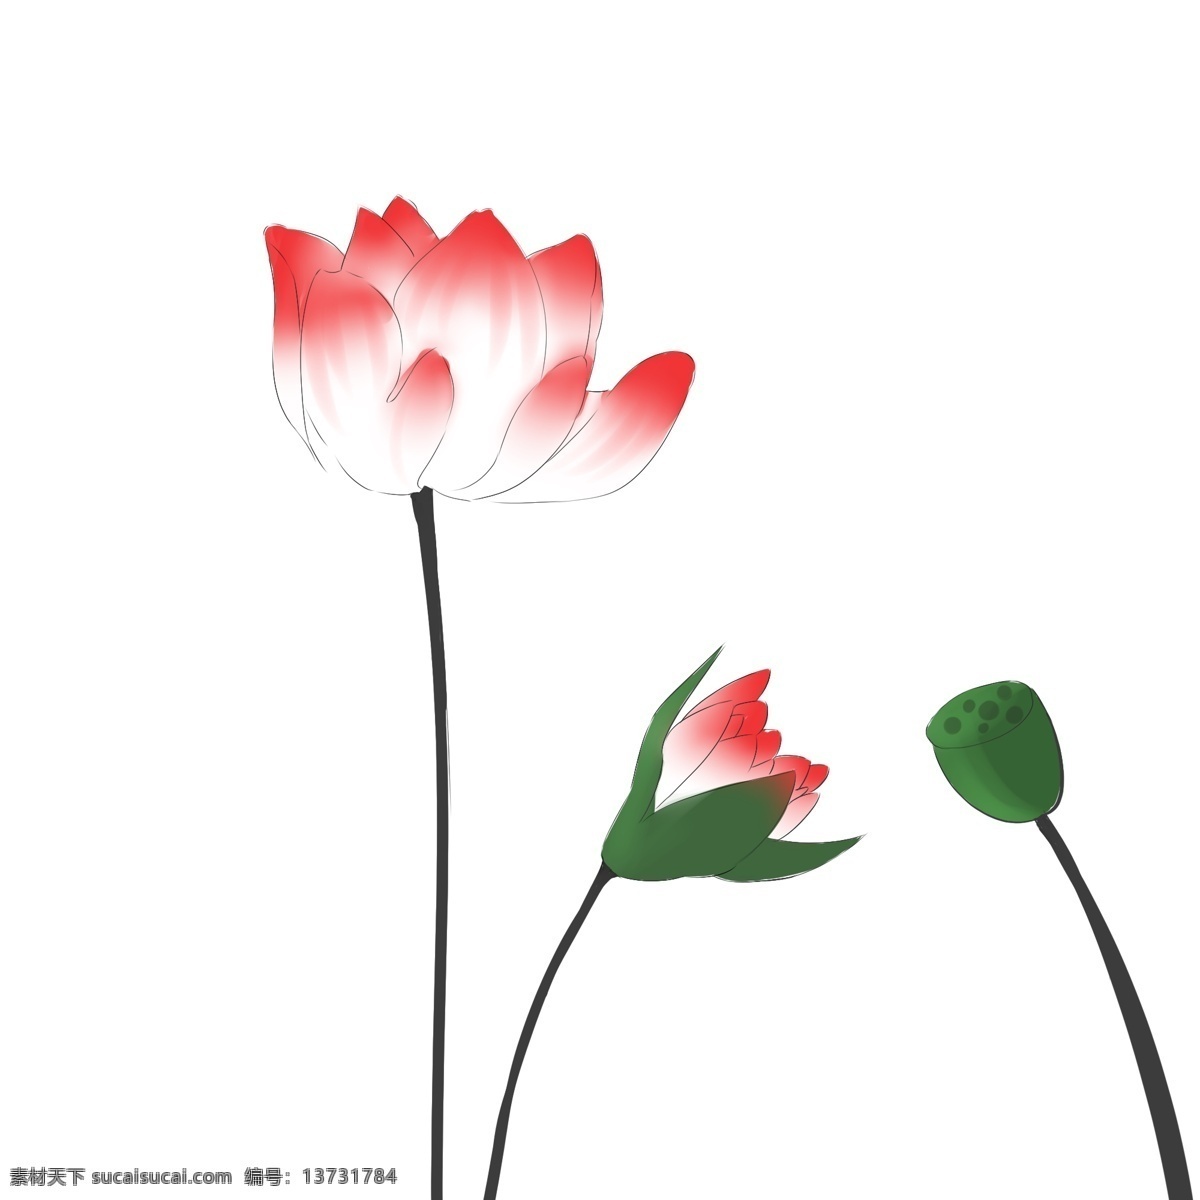 红色 荷花 卡通 插画 红色的荷花 卡通插画 花朵插画 鲜花 花束 荷花插画 花卉 漂亮的荷花